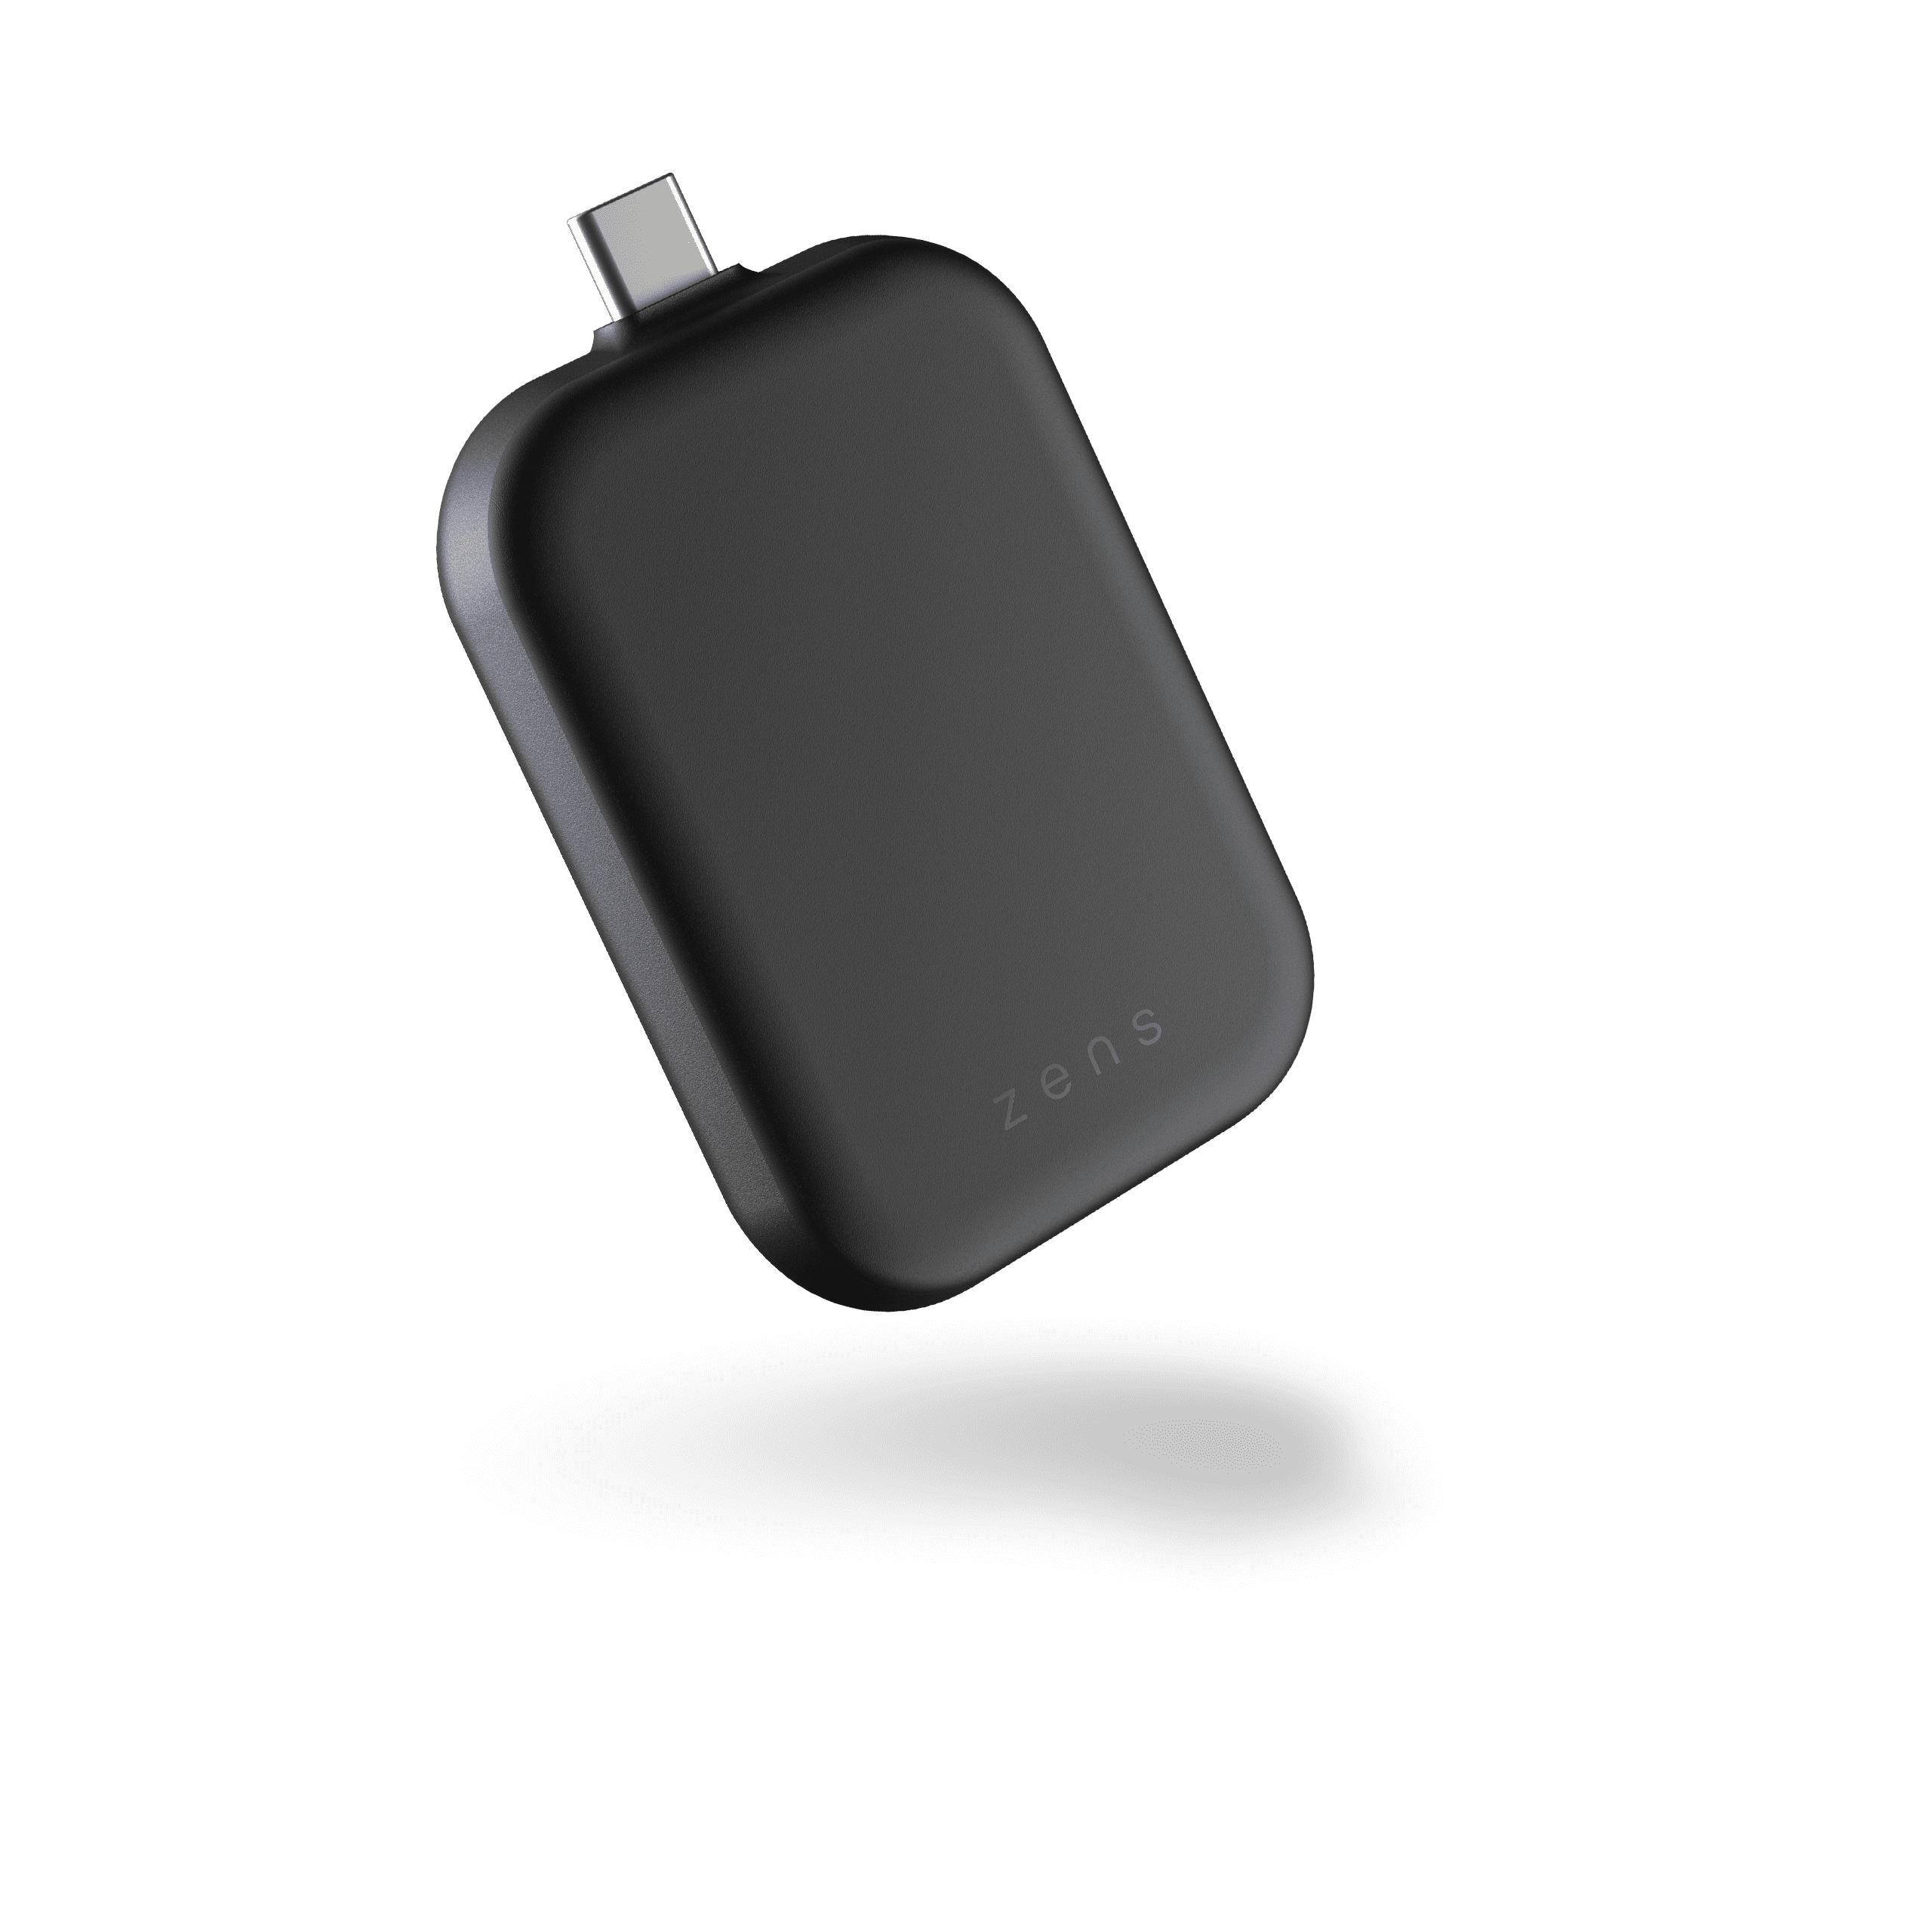 ZENS Aluminium USB-C Stick for AirPods or iPhone